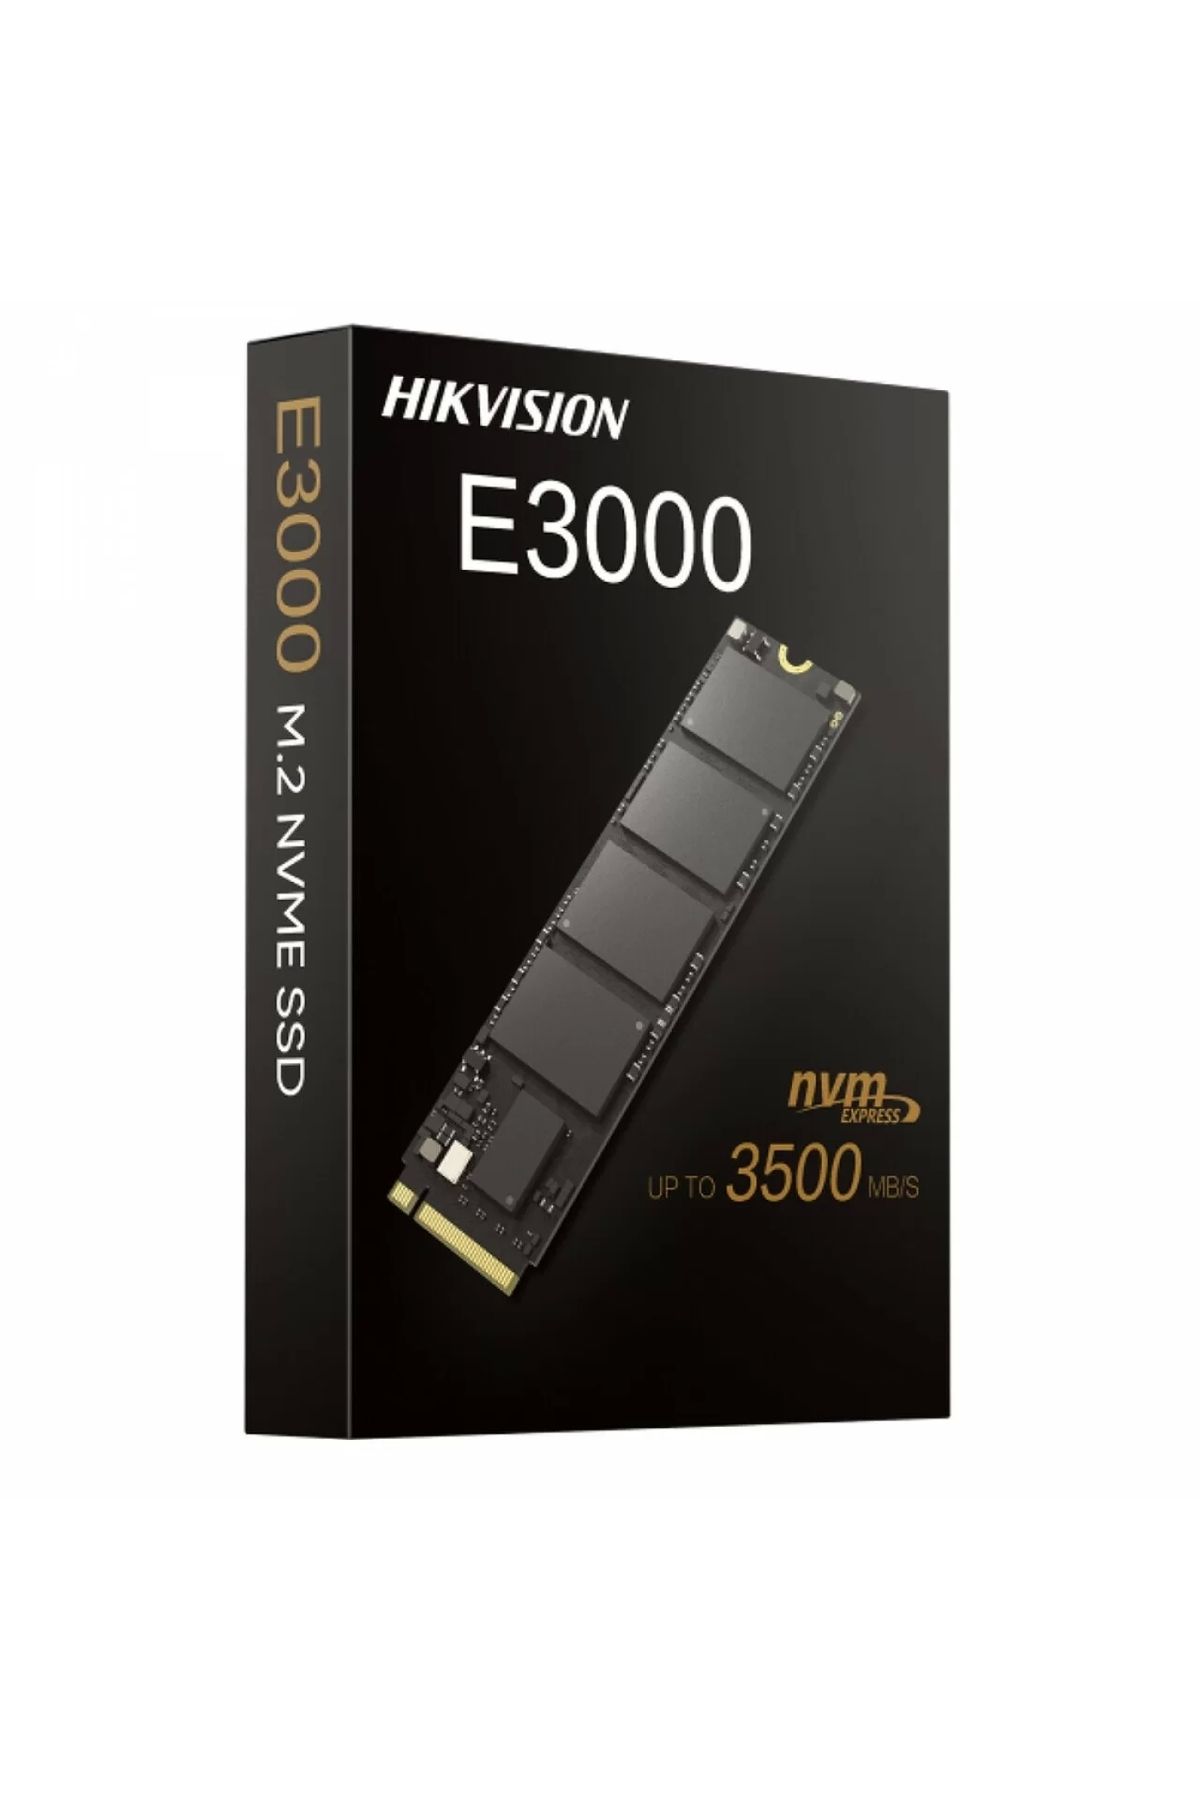 Hikvision HİKVİSİON 1024GB E3000 3520MB-2900MB-S NVME HS-SSD-E3000-1024G SSD HARDDİSK